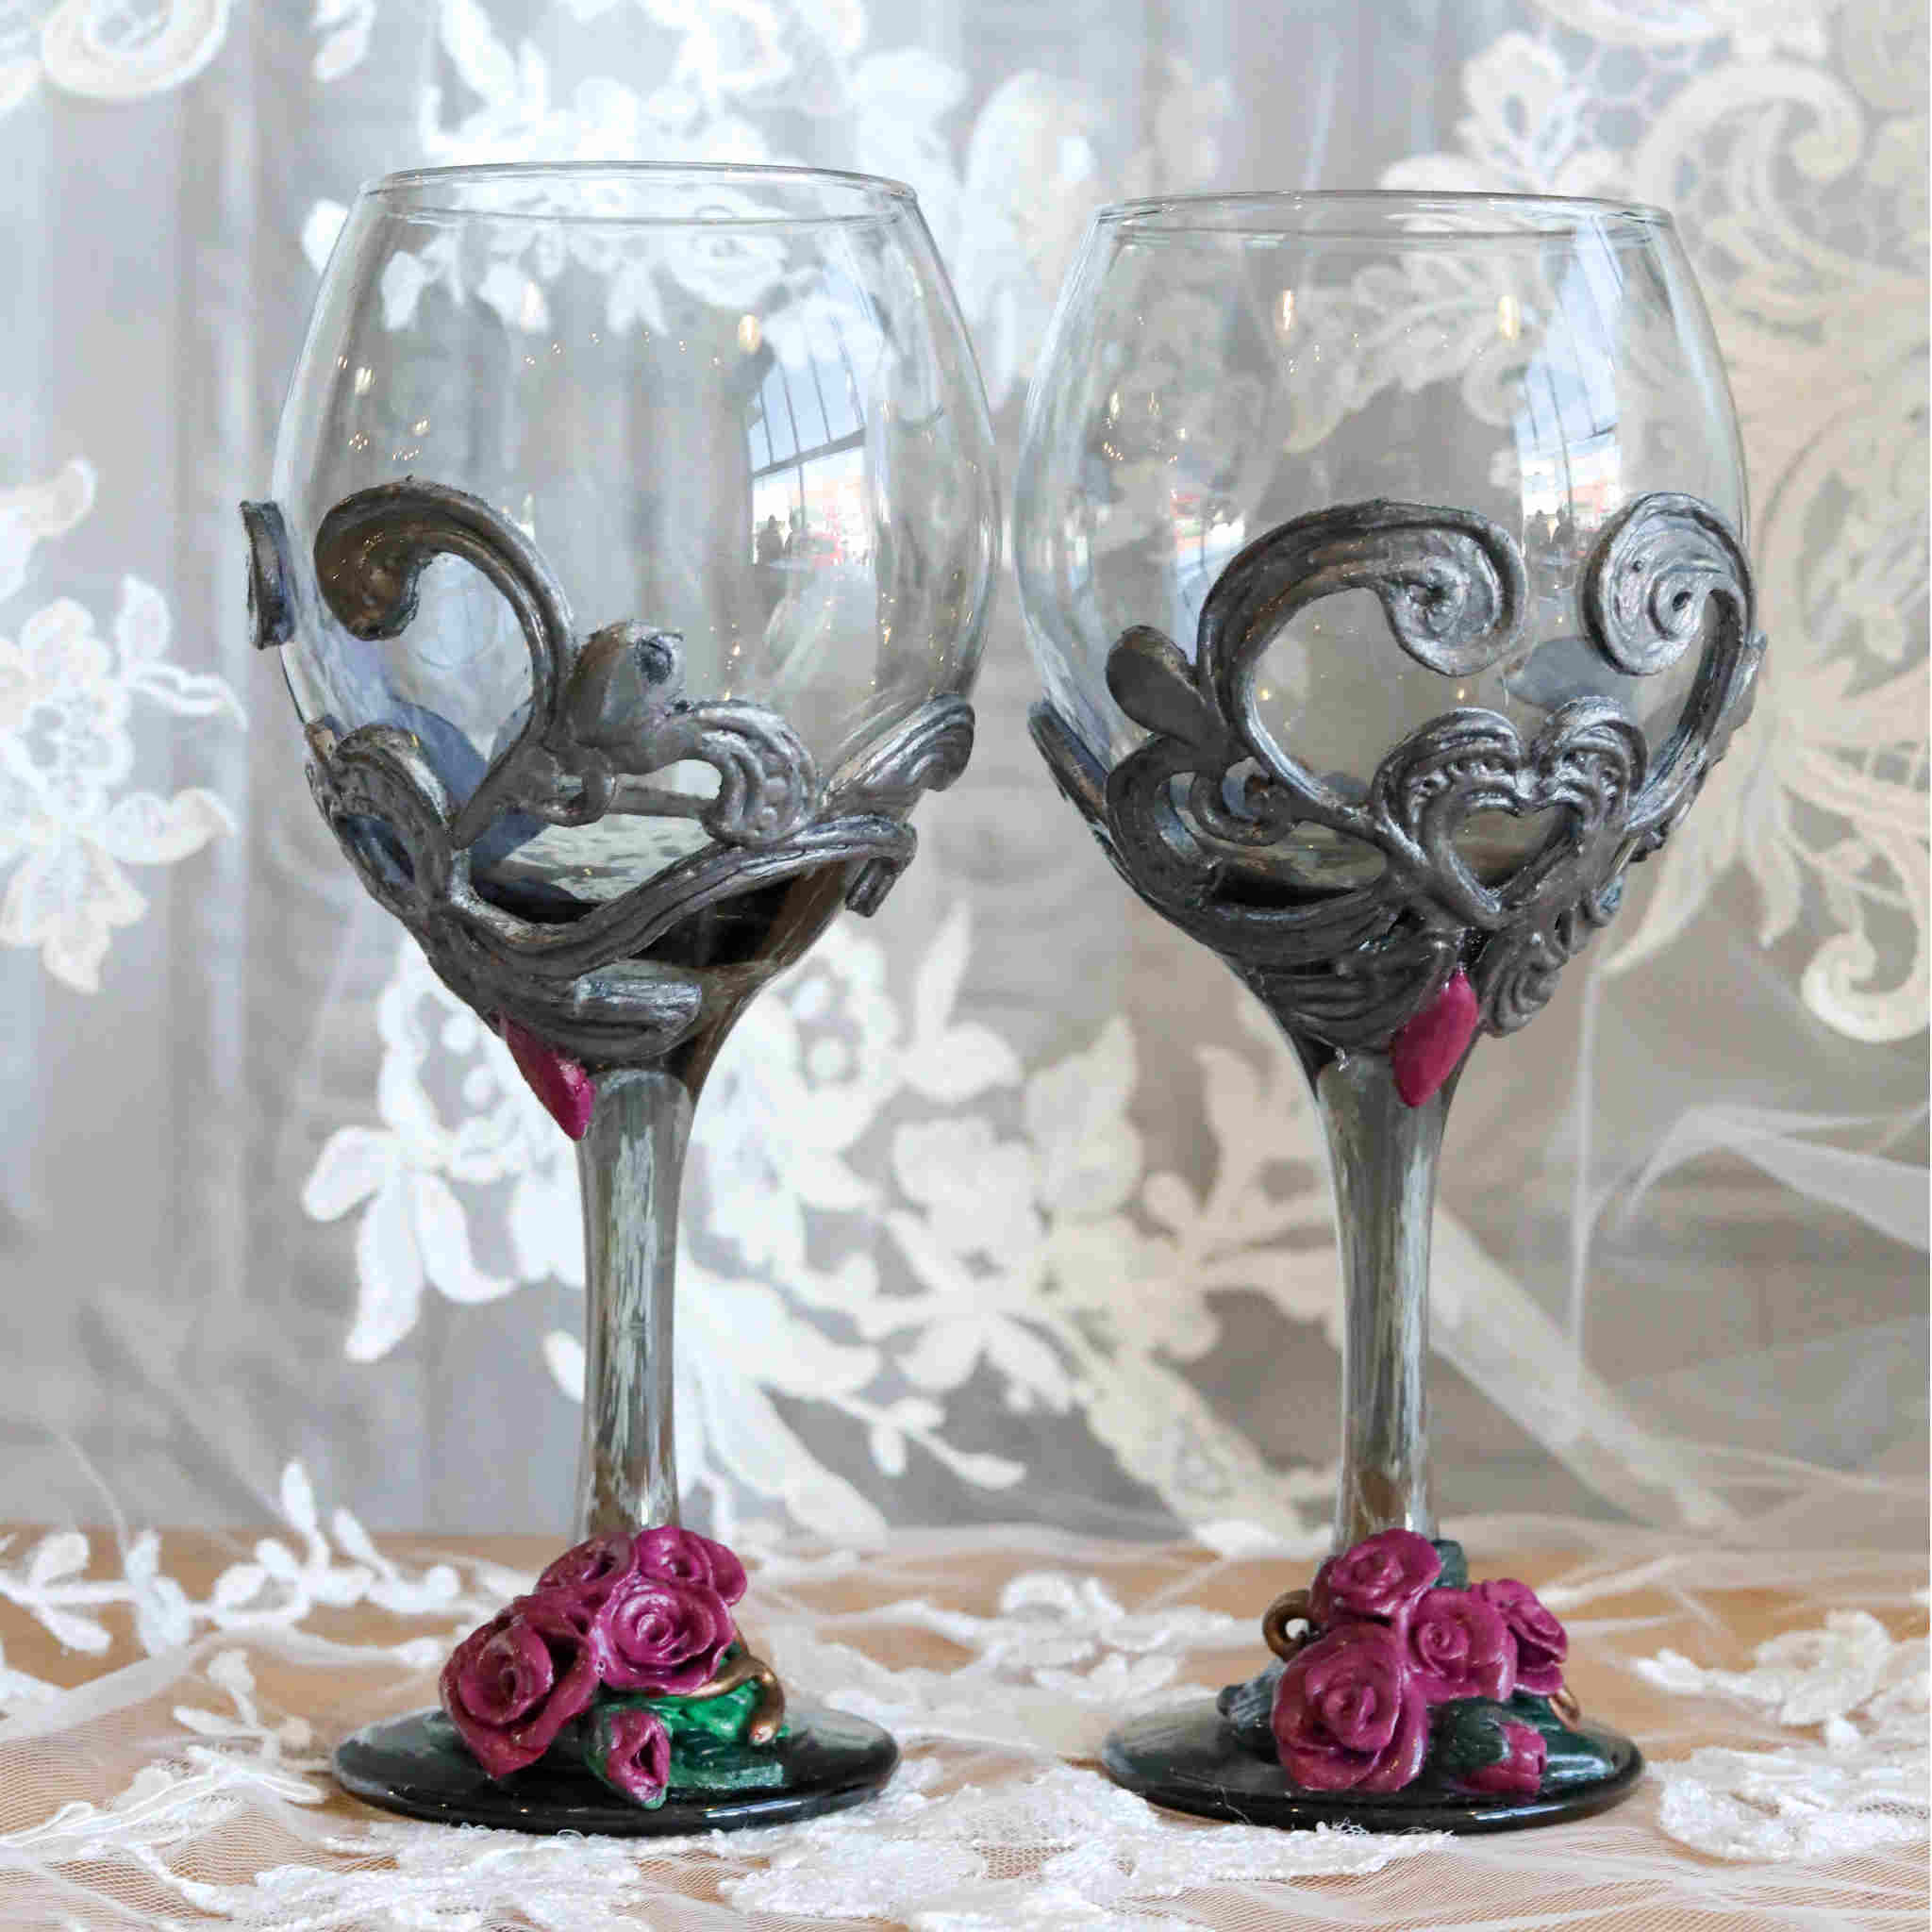 Buy Rustik Craft Golden Color Brass Goblets Flute Wine Glasses